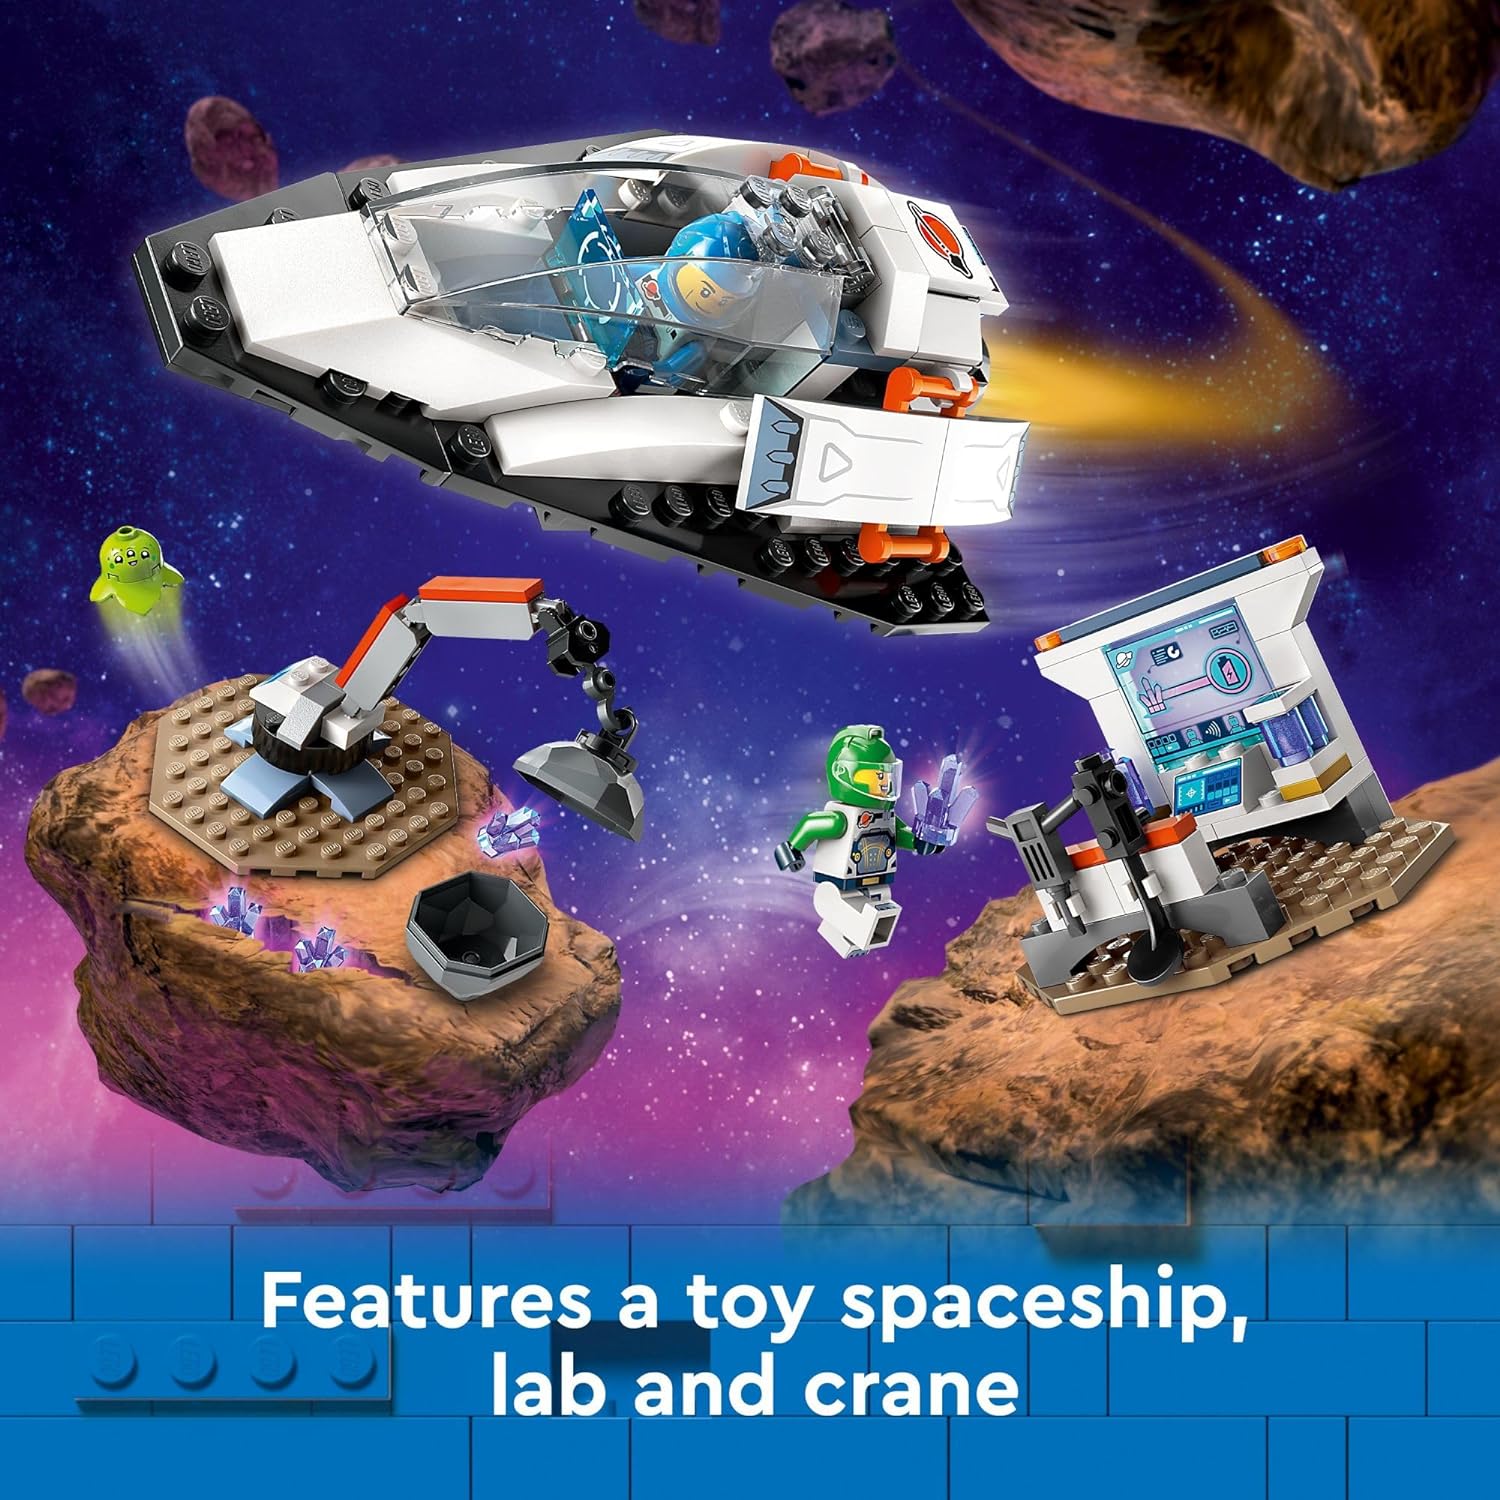 مجموعة بناء لعبة اكتشاف سفينة الفضاء والكويكبات من ليجو 60429، هدية للأطفال بعمر 4 سنوات فما فوق والذين يحبون اللعب التظاهري، تتضمن شخصيتين صغيرتين لطاقم الفضاء، كائن فضائي، كريستالات، لعبة رافعة